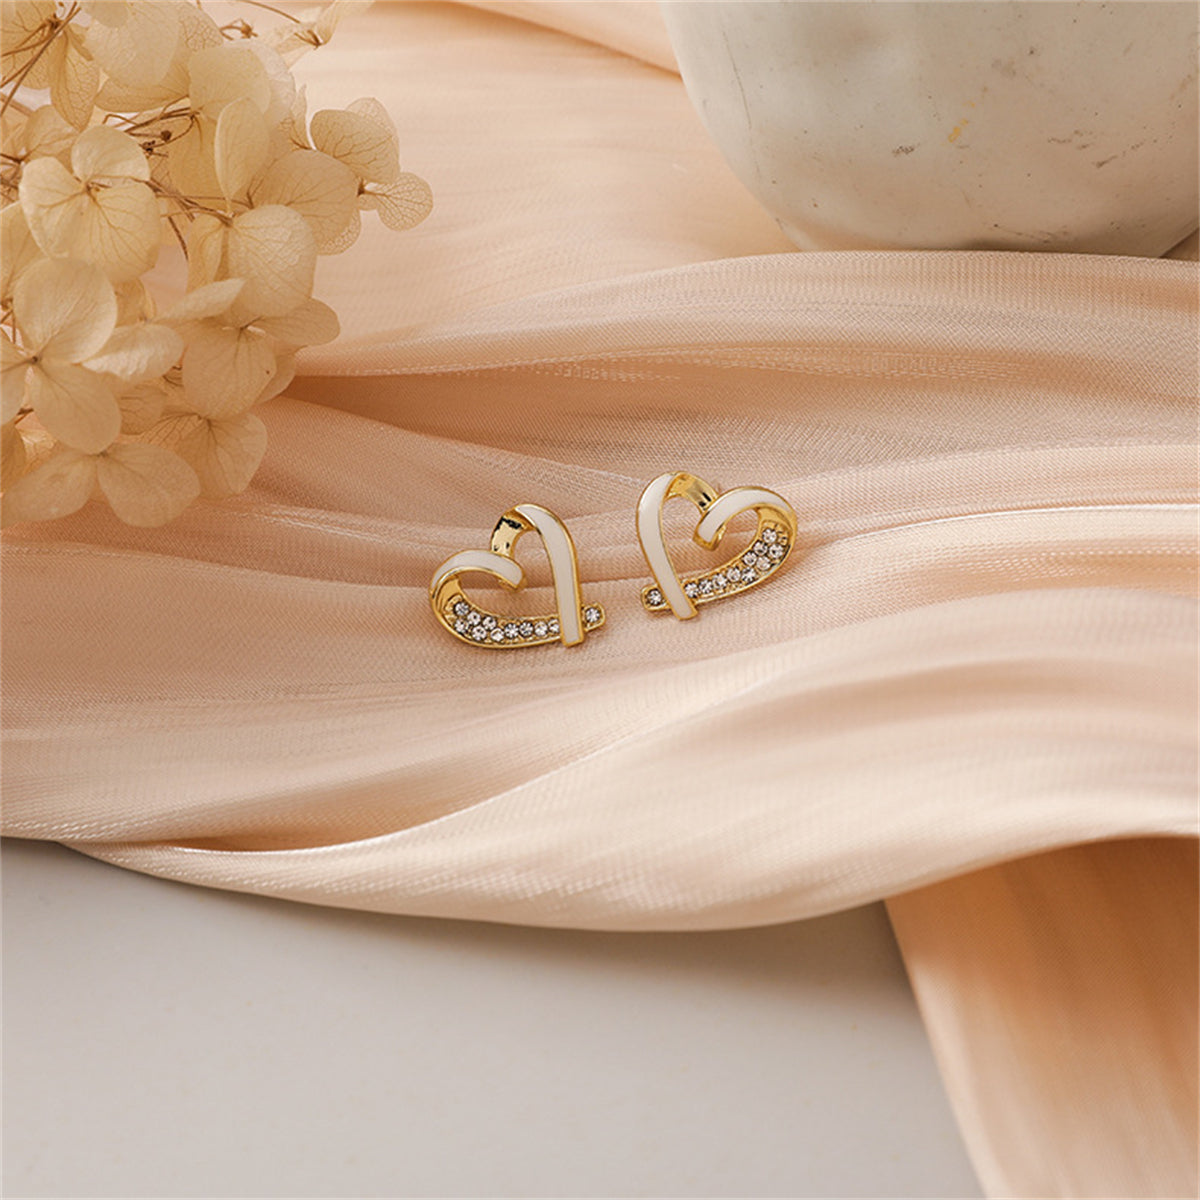 18K Gold-Plated & Cubic Zirconia Open Heart Stud Earring